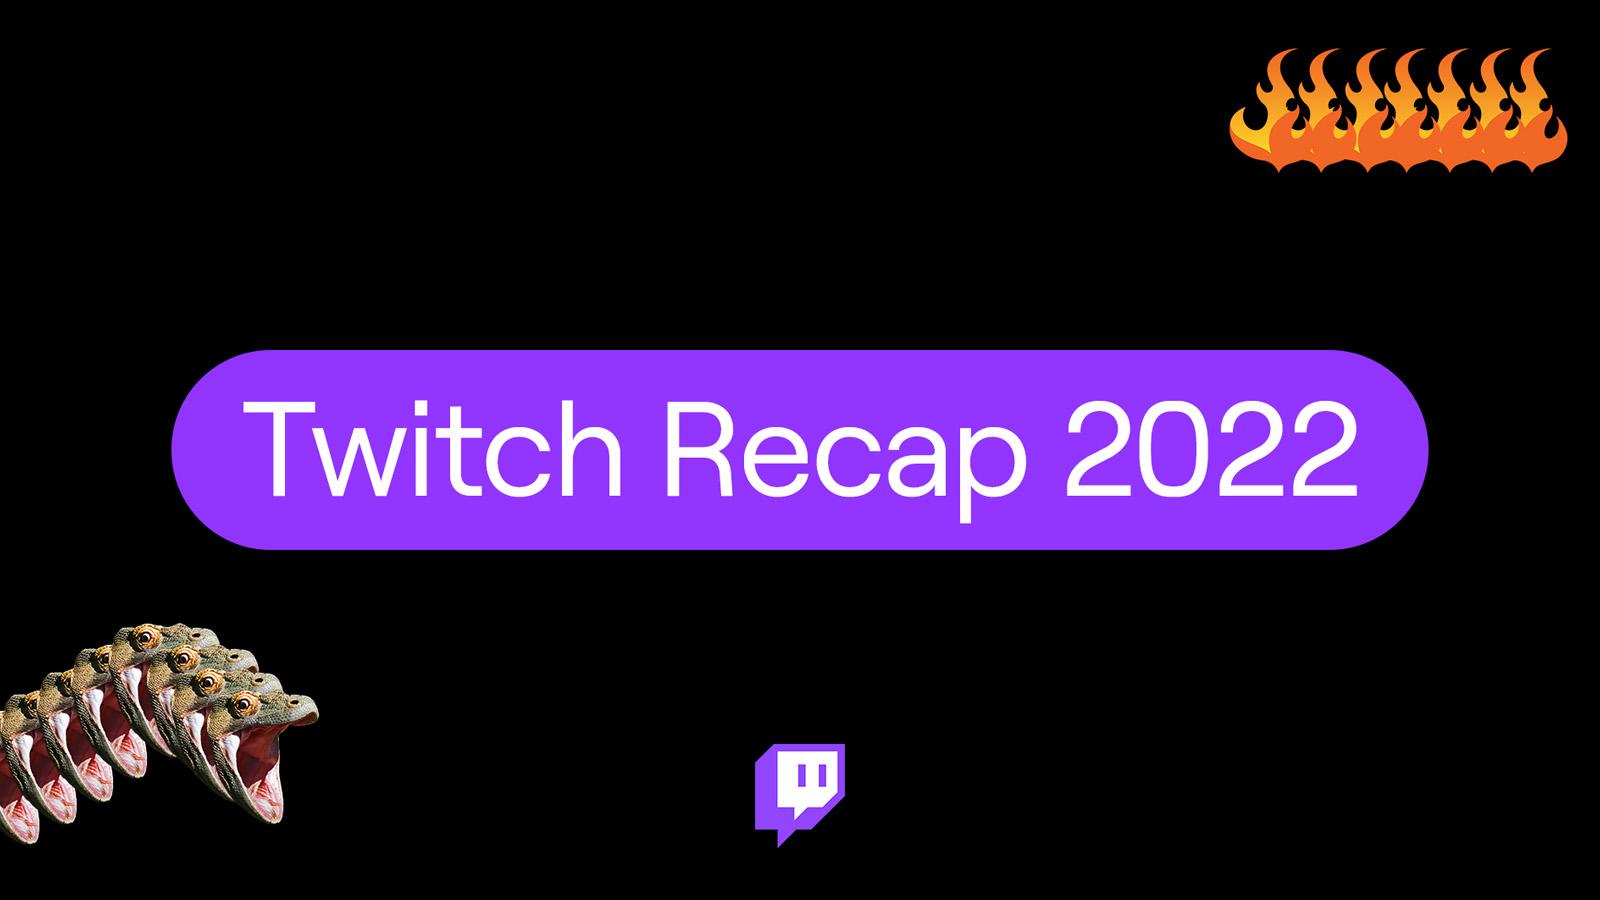 Twitch recap 2022